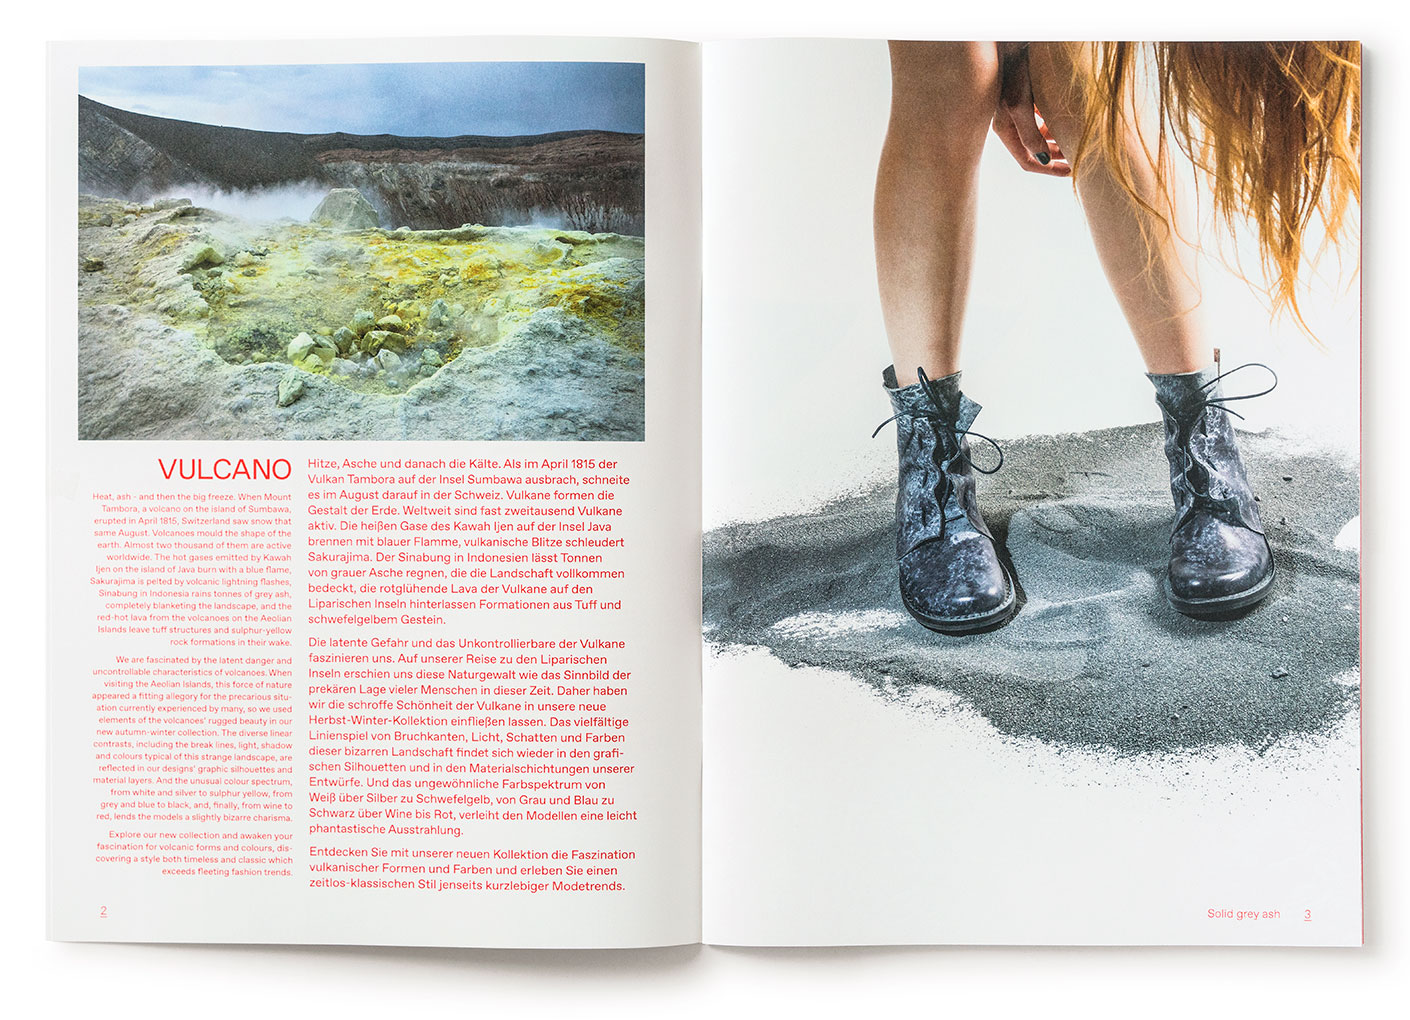 Editorial Design, Trippen Schuhe, Trippen Magazin, fernkopie Kommunikation, Gestaltung, Grafische Gestaltung